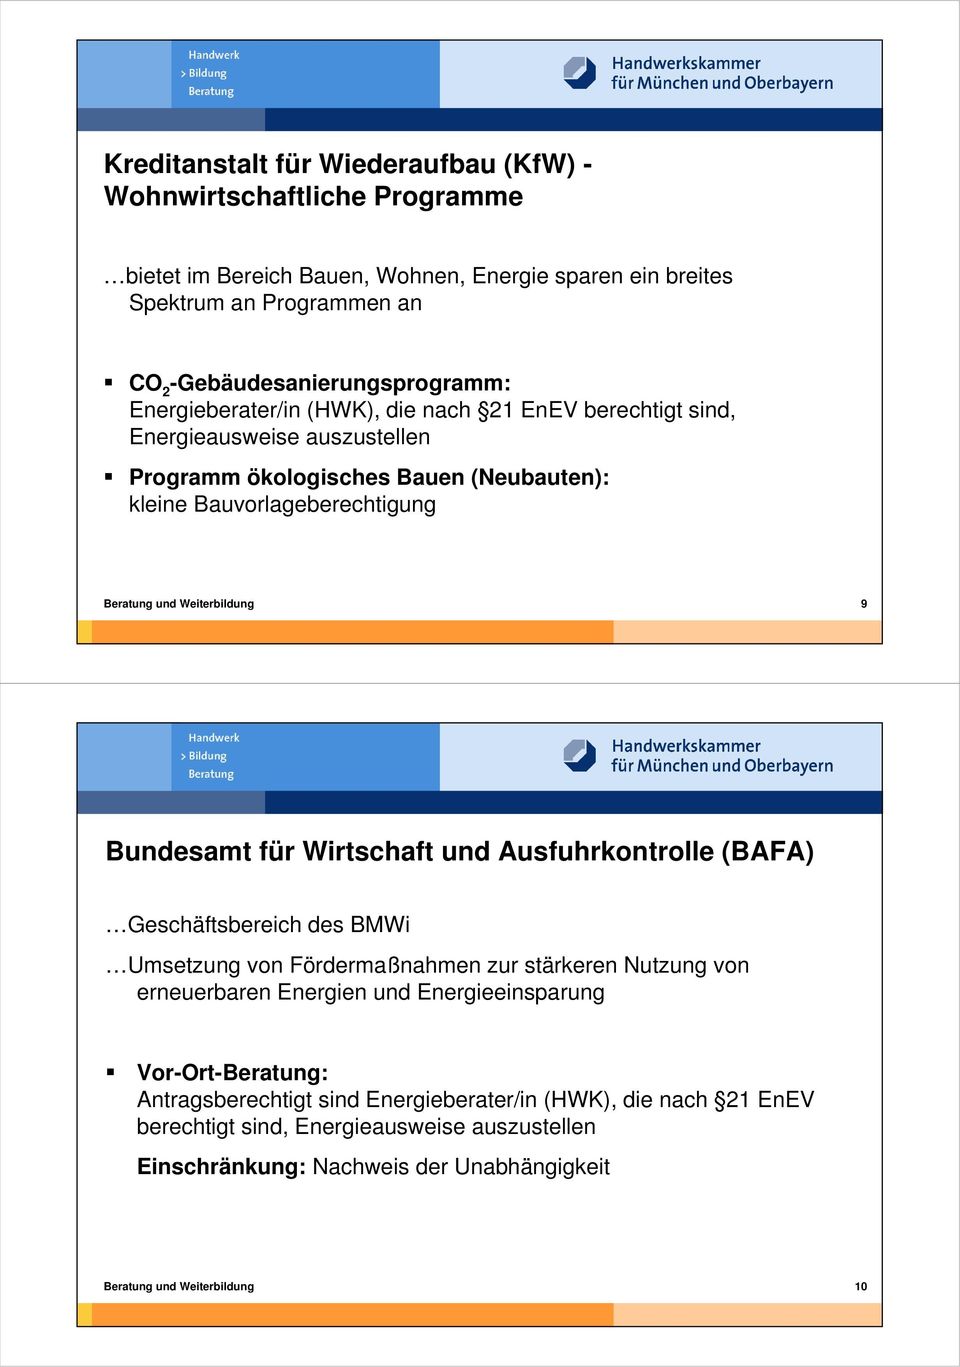 Bundesamt für Wirtschaft und Ausfuhrkontrolle (BAFA) Geschäftsbereich des BMWi Umsetzung von Fördermaßnahmen zur stärkeren Nutzung von erneuerbaren Energien und Energieeinsparung